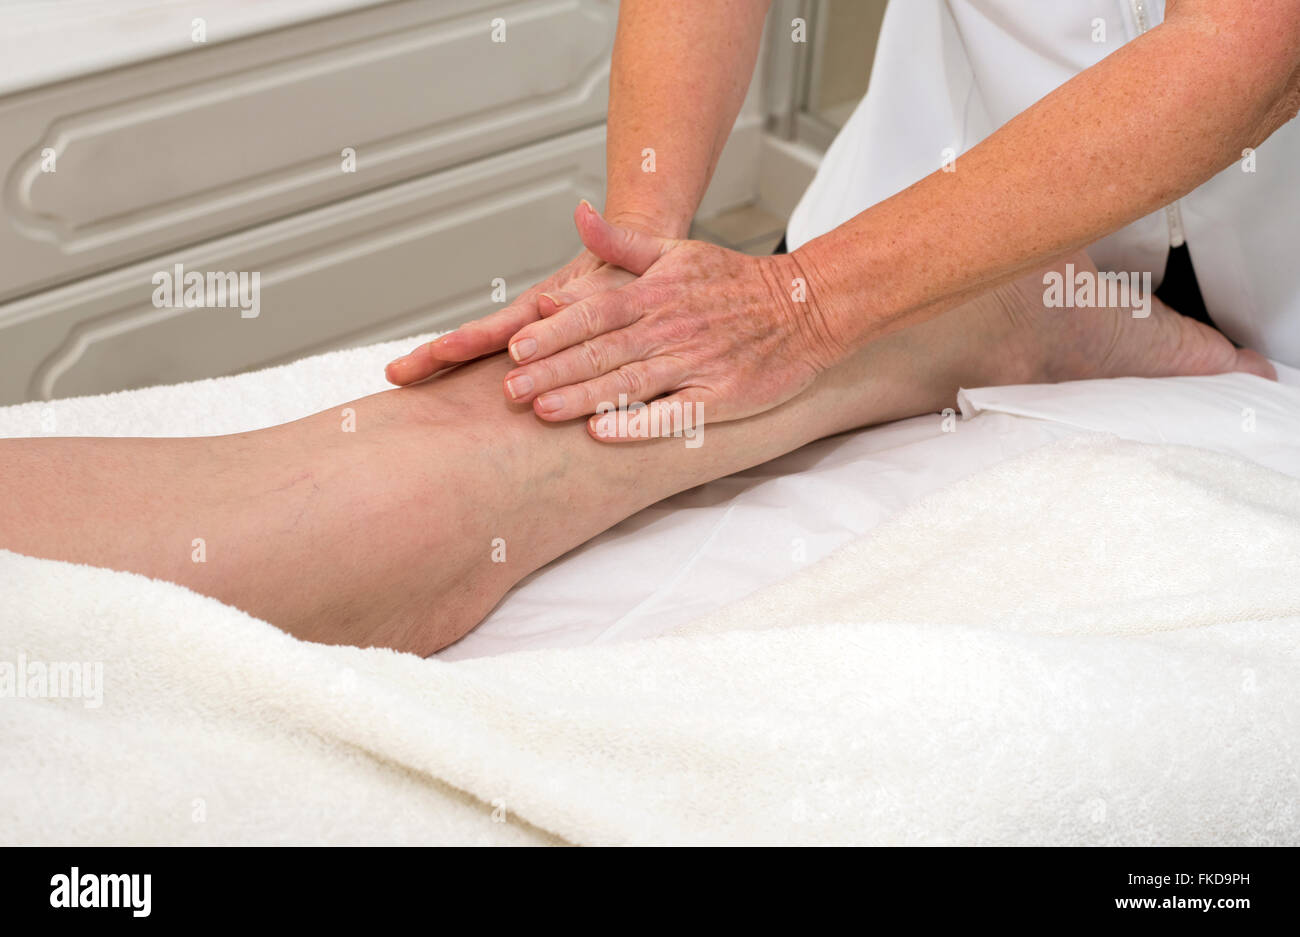 A masseuse massaging a woman client's leg massage Stock Photo